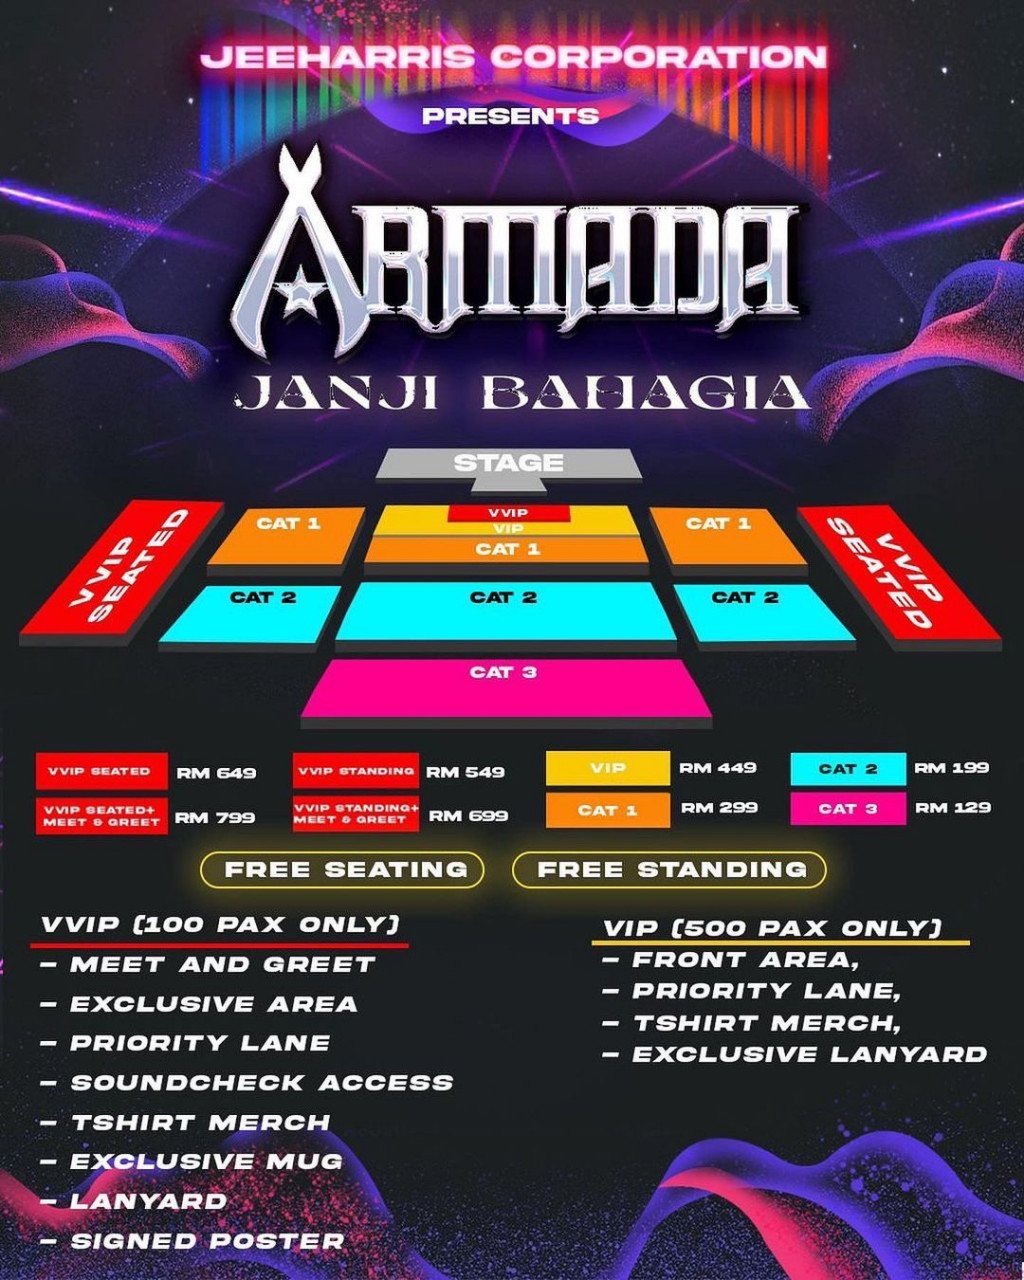 Armada Band dijadualkan mengadakan konsert pada 4 November hadapan, di Pusat Konvensyen Antarabangsa Sabah (SICC).